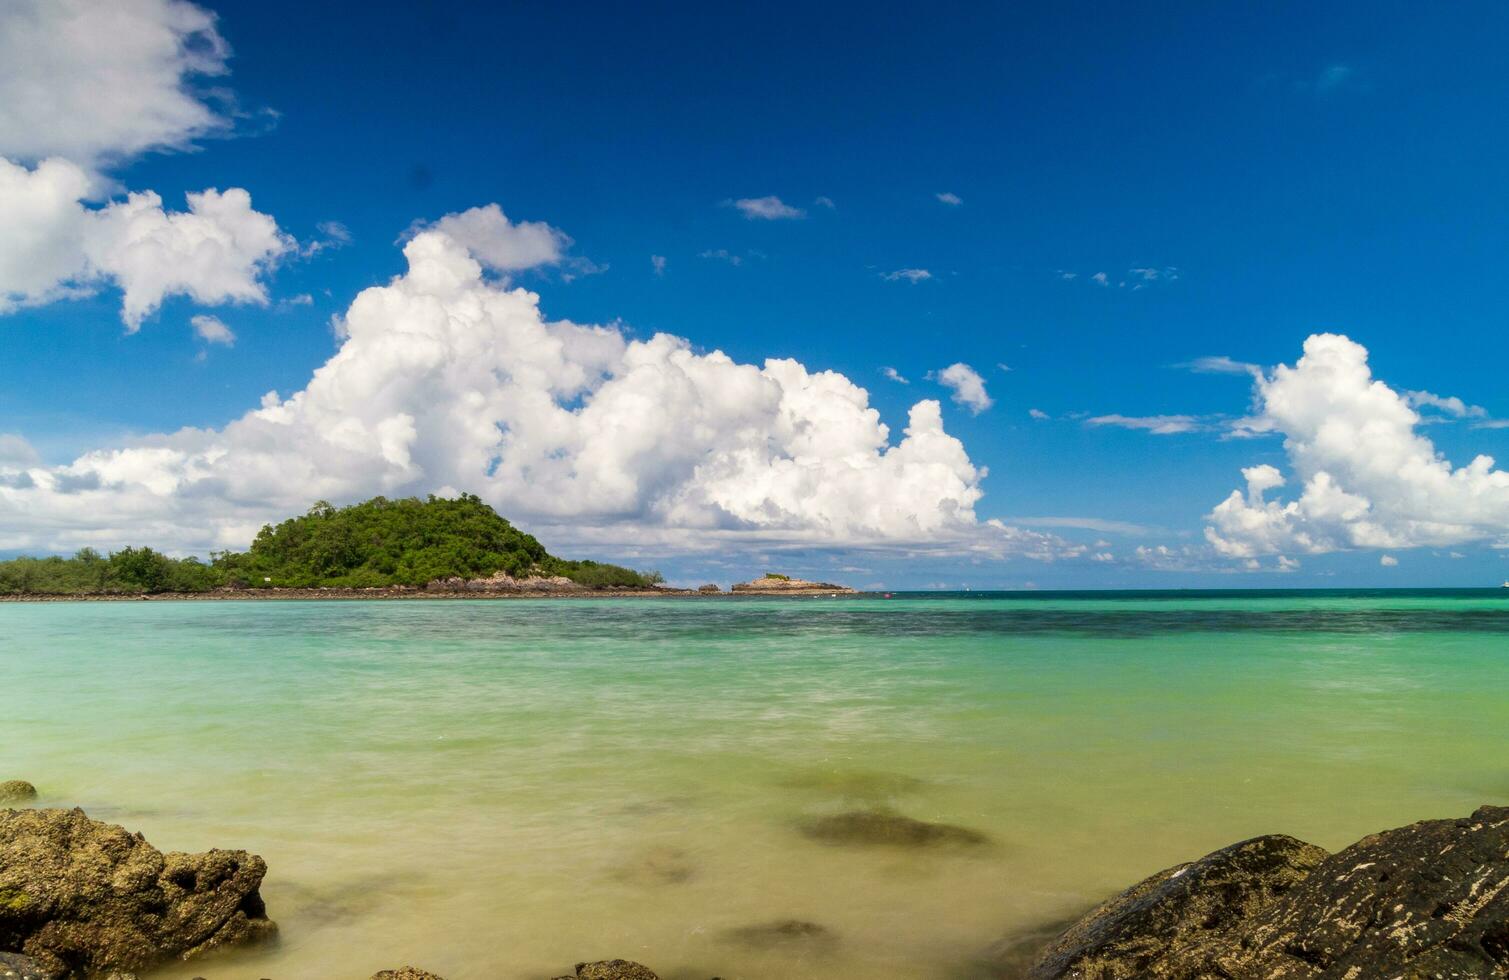 paisaje ver largo exposición blanco arena playa claro azul agua nang RAM playa, chonburi Tailandia temprano Mañana con azul cielo blanco nubes Perfecto viaje. en turista viaje fiesta en verano de año foto